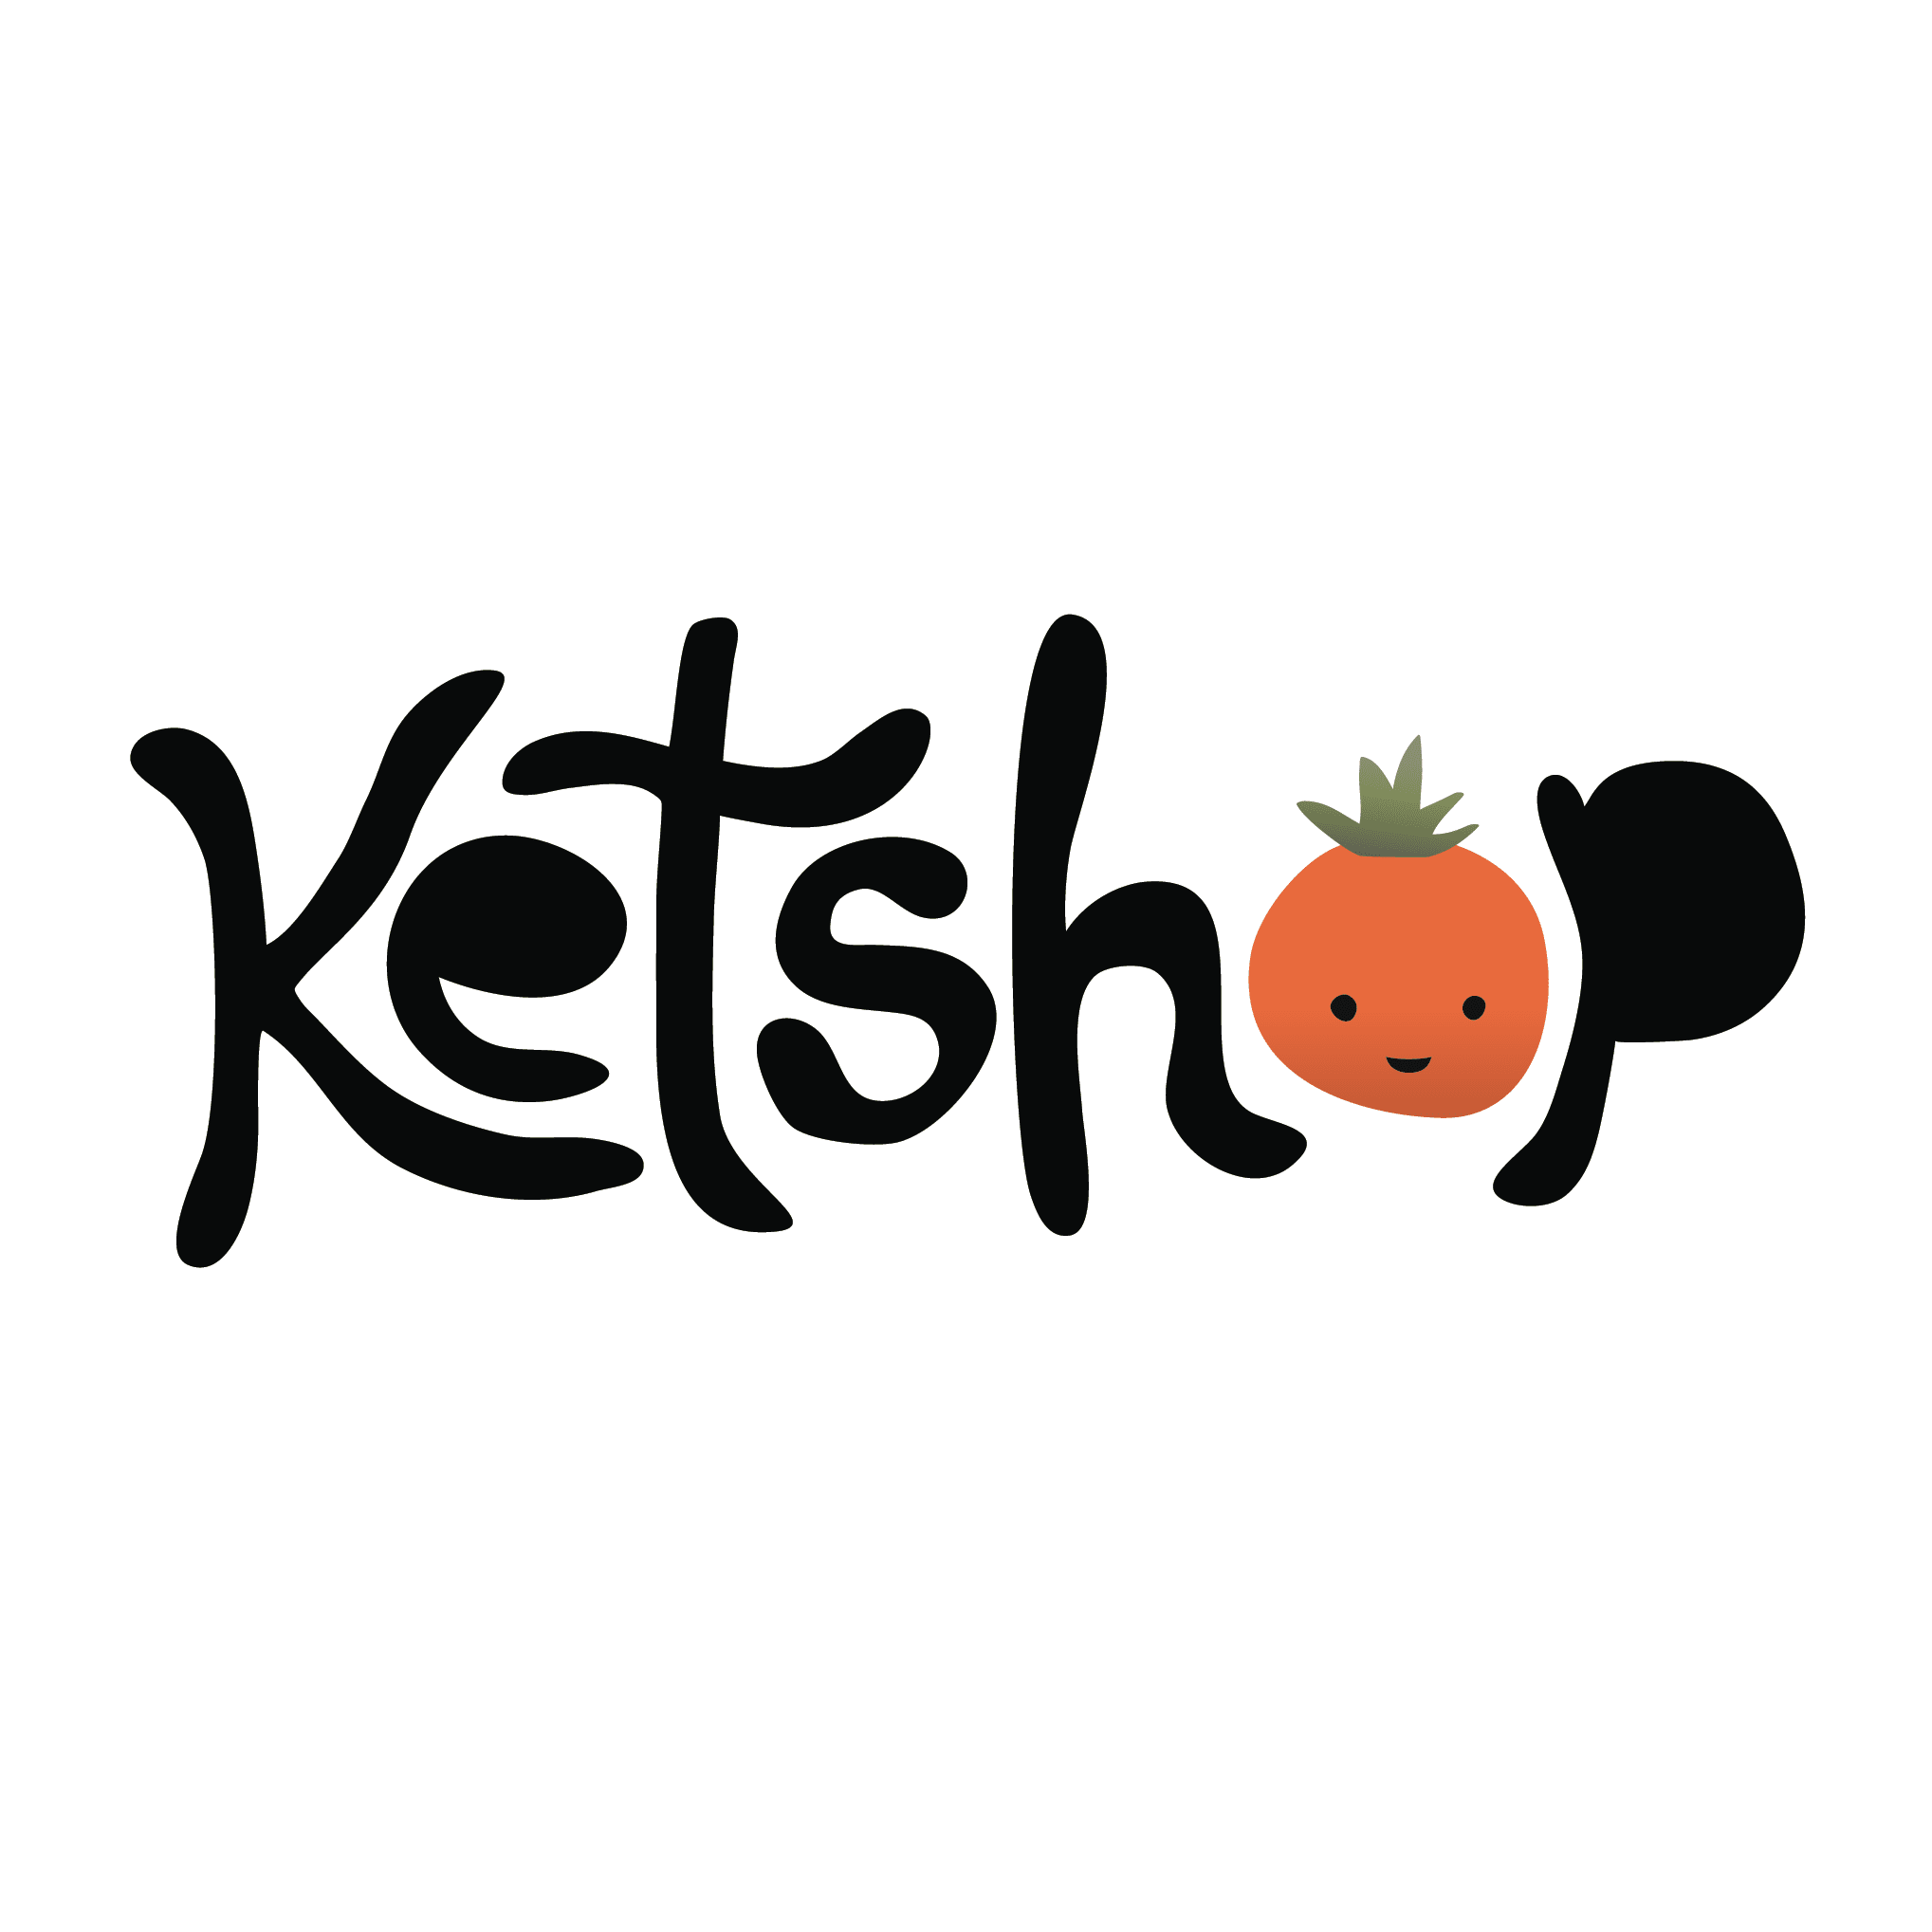 Ketshop logo